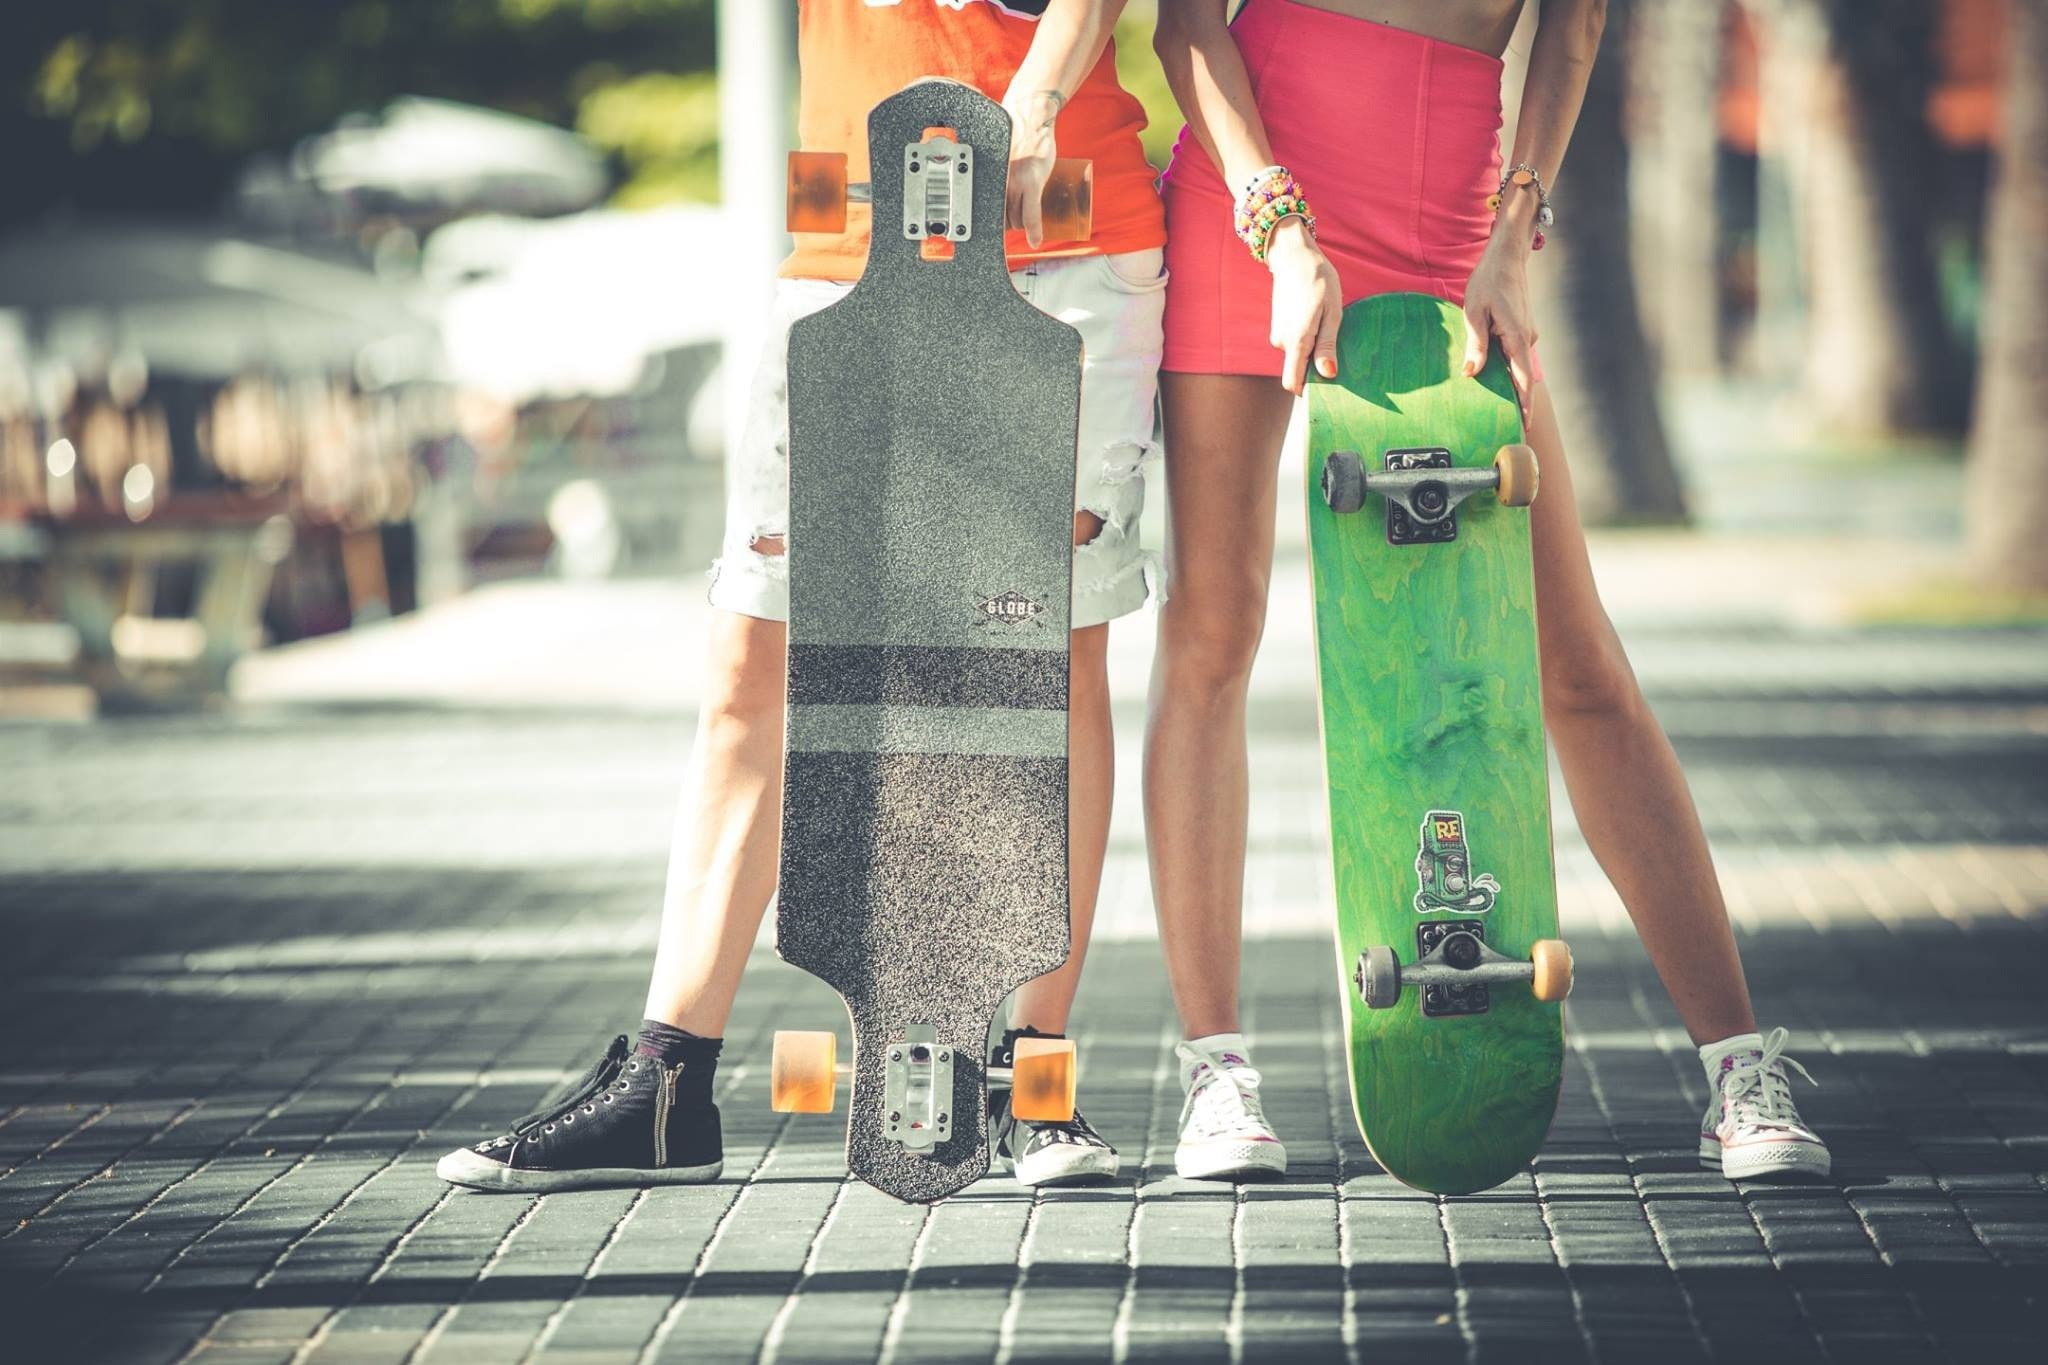 Skateboard hobby, woman, people, Legs, sport, pavement, longboard